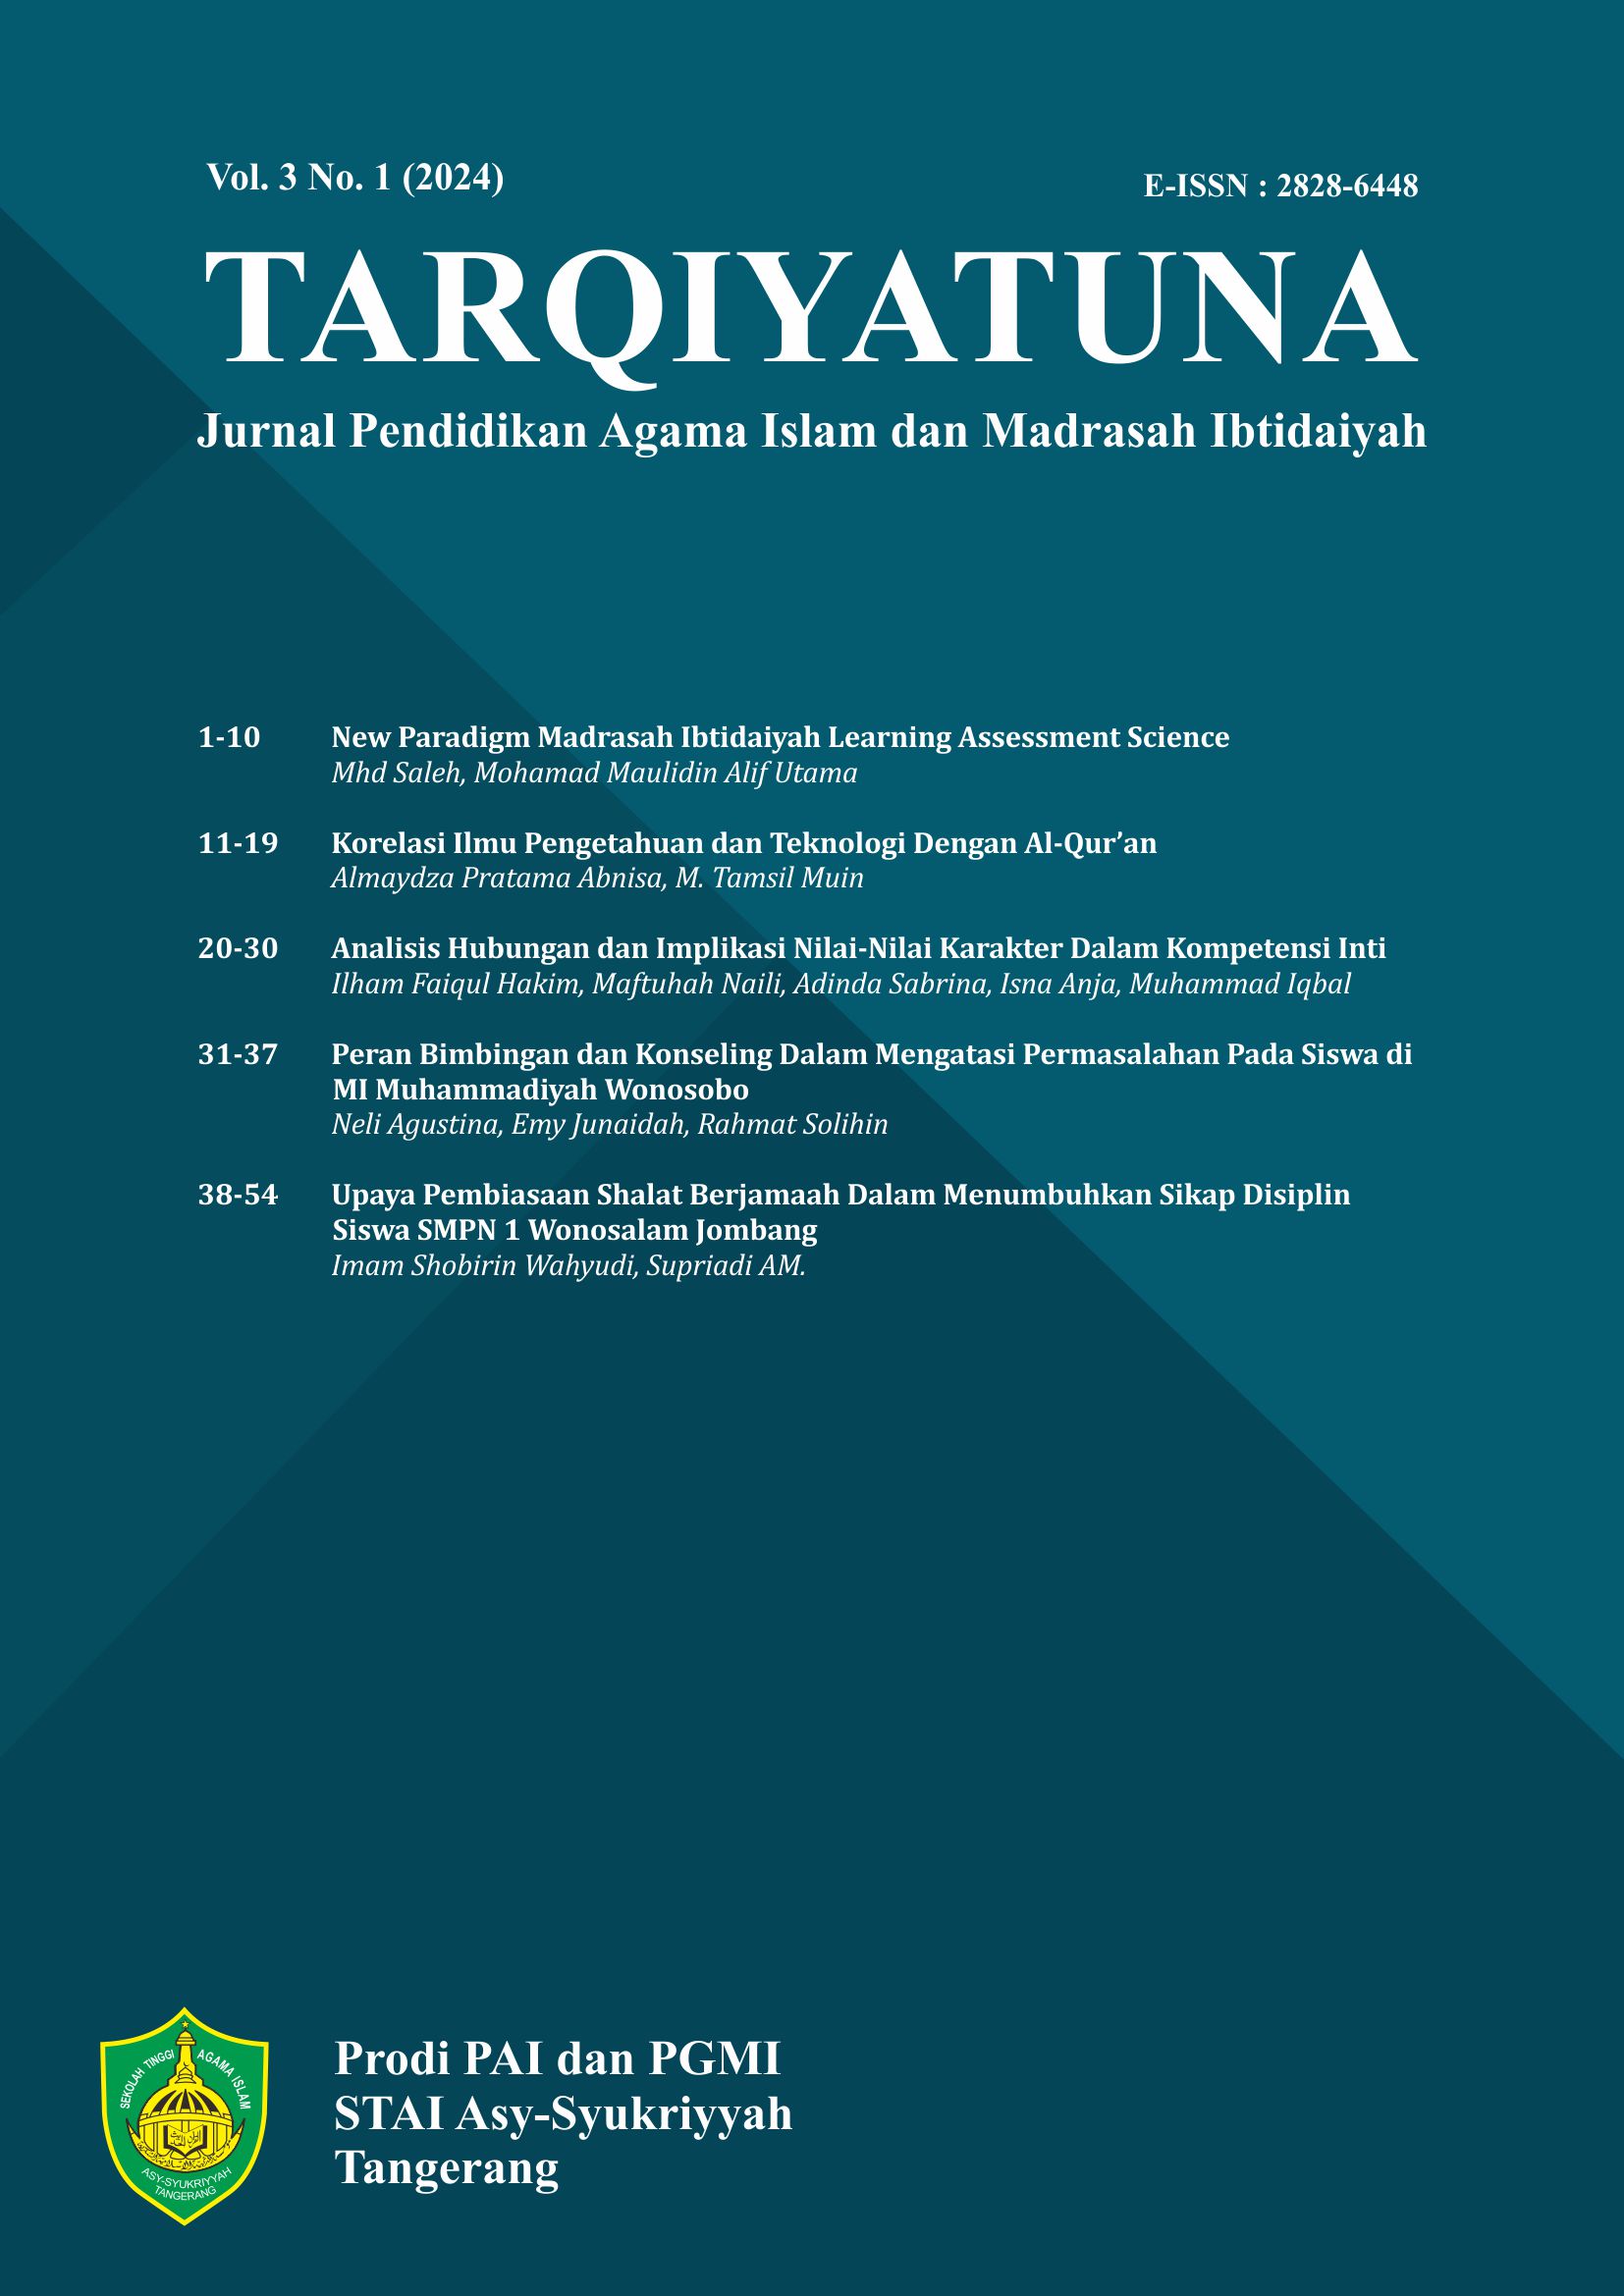 					View Vol. 3 No. 1 (2024): TARQIYATUNA: Jurnal Pendidikan Agama Islam dan Madrasah Ibtidaiyah
				